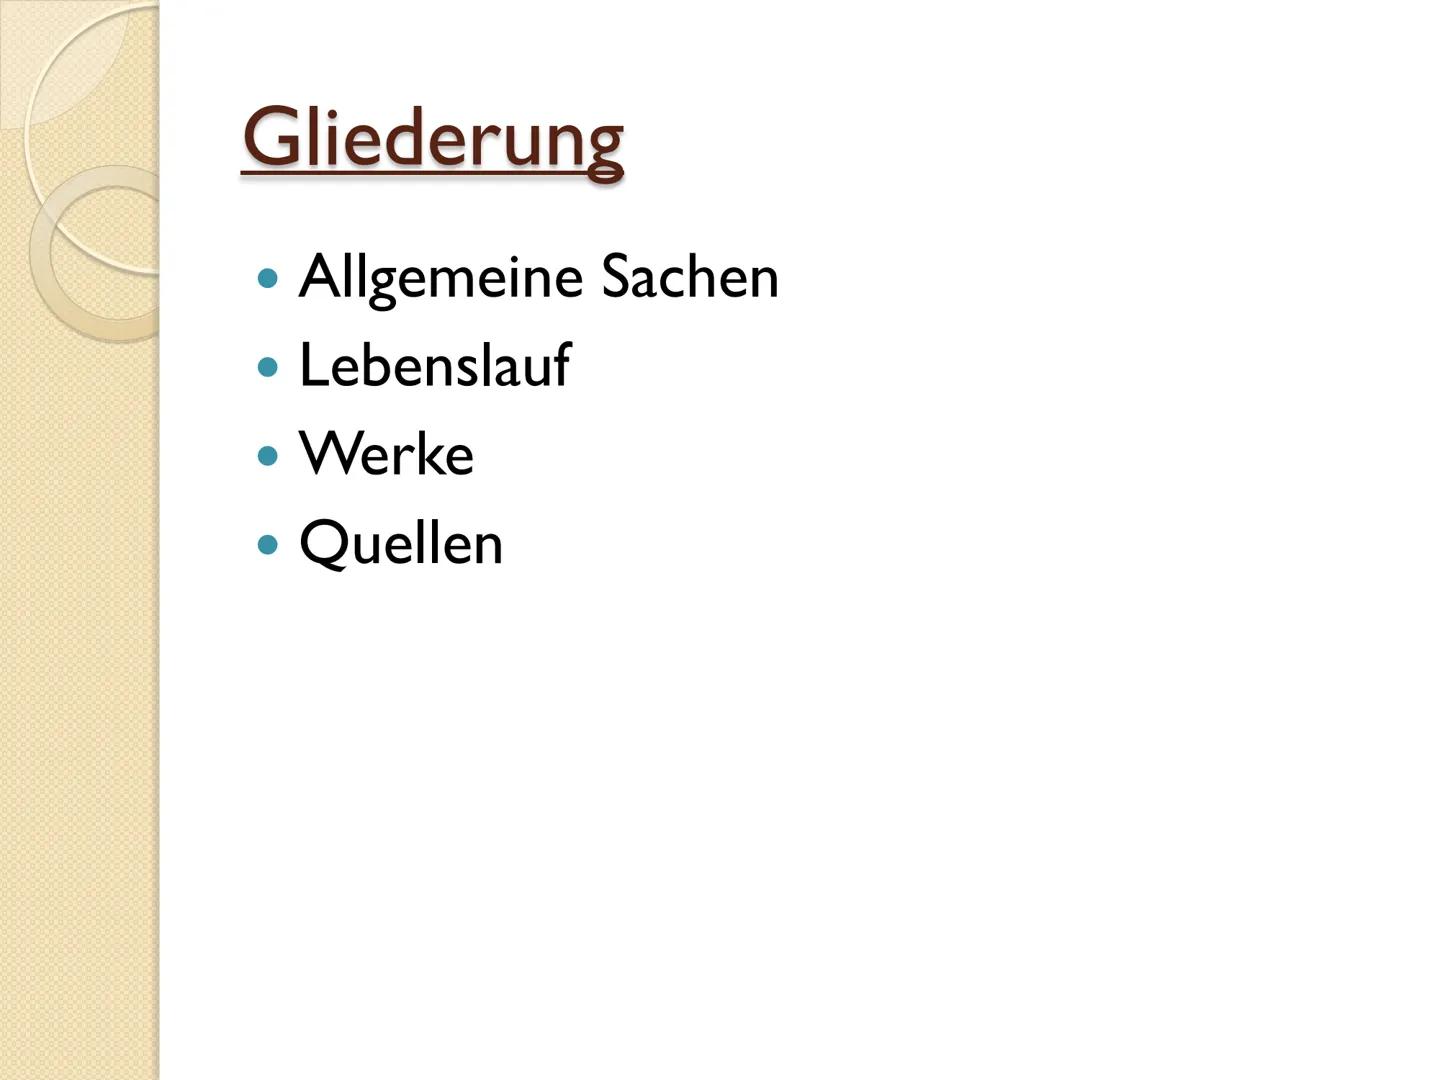 Gottfried Keller
alan
alan
story
alamy Gliederung
Allgemeine Sachen
Lebenslauf
Werke
Quellen Allgemeine Sachen
* 19. Juli 1819 in Zürich, Sc